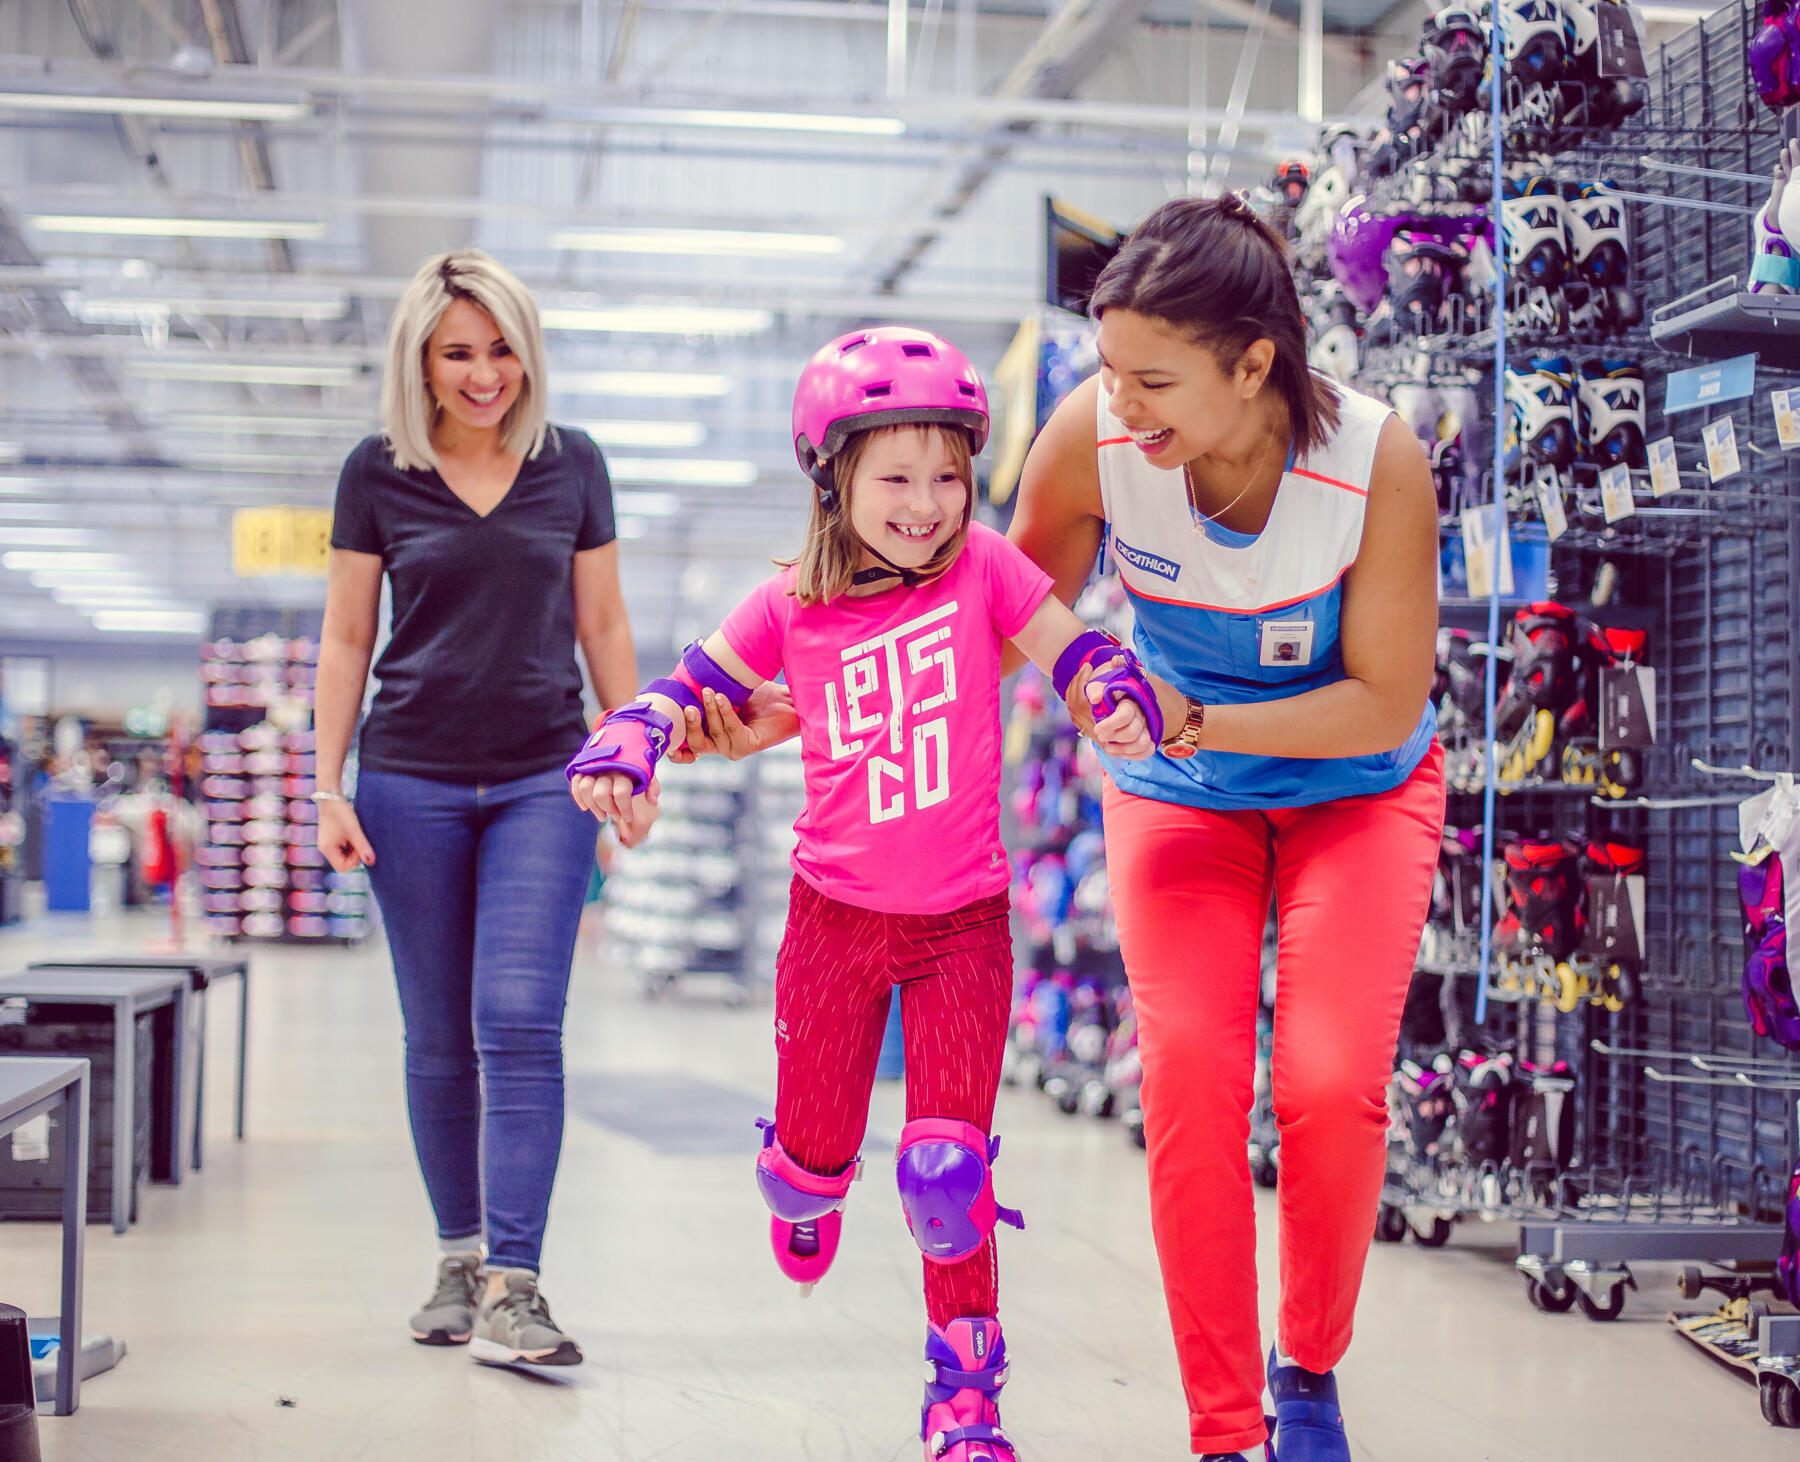 Criança experimenta patins em loja, com ajuda de colaboradora.